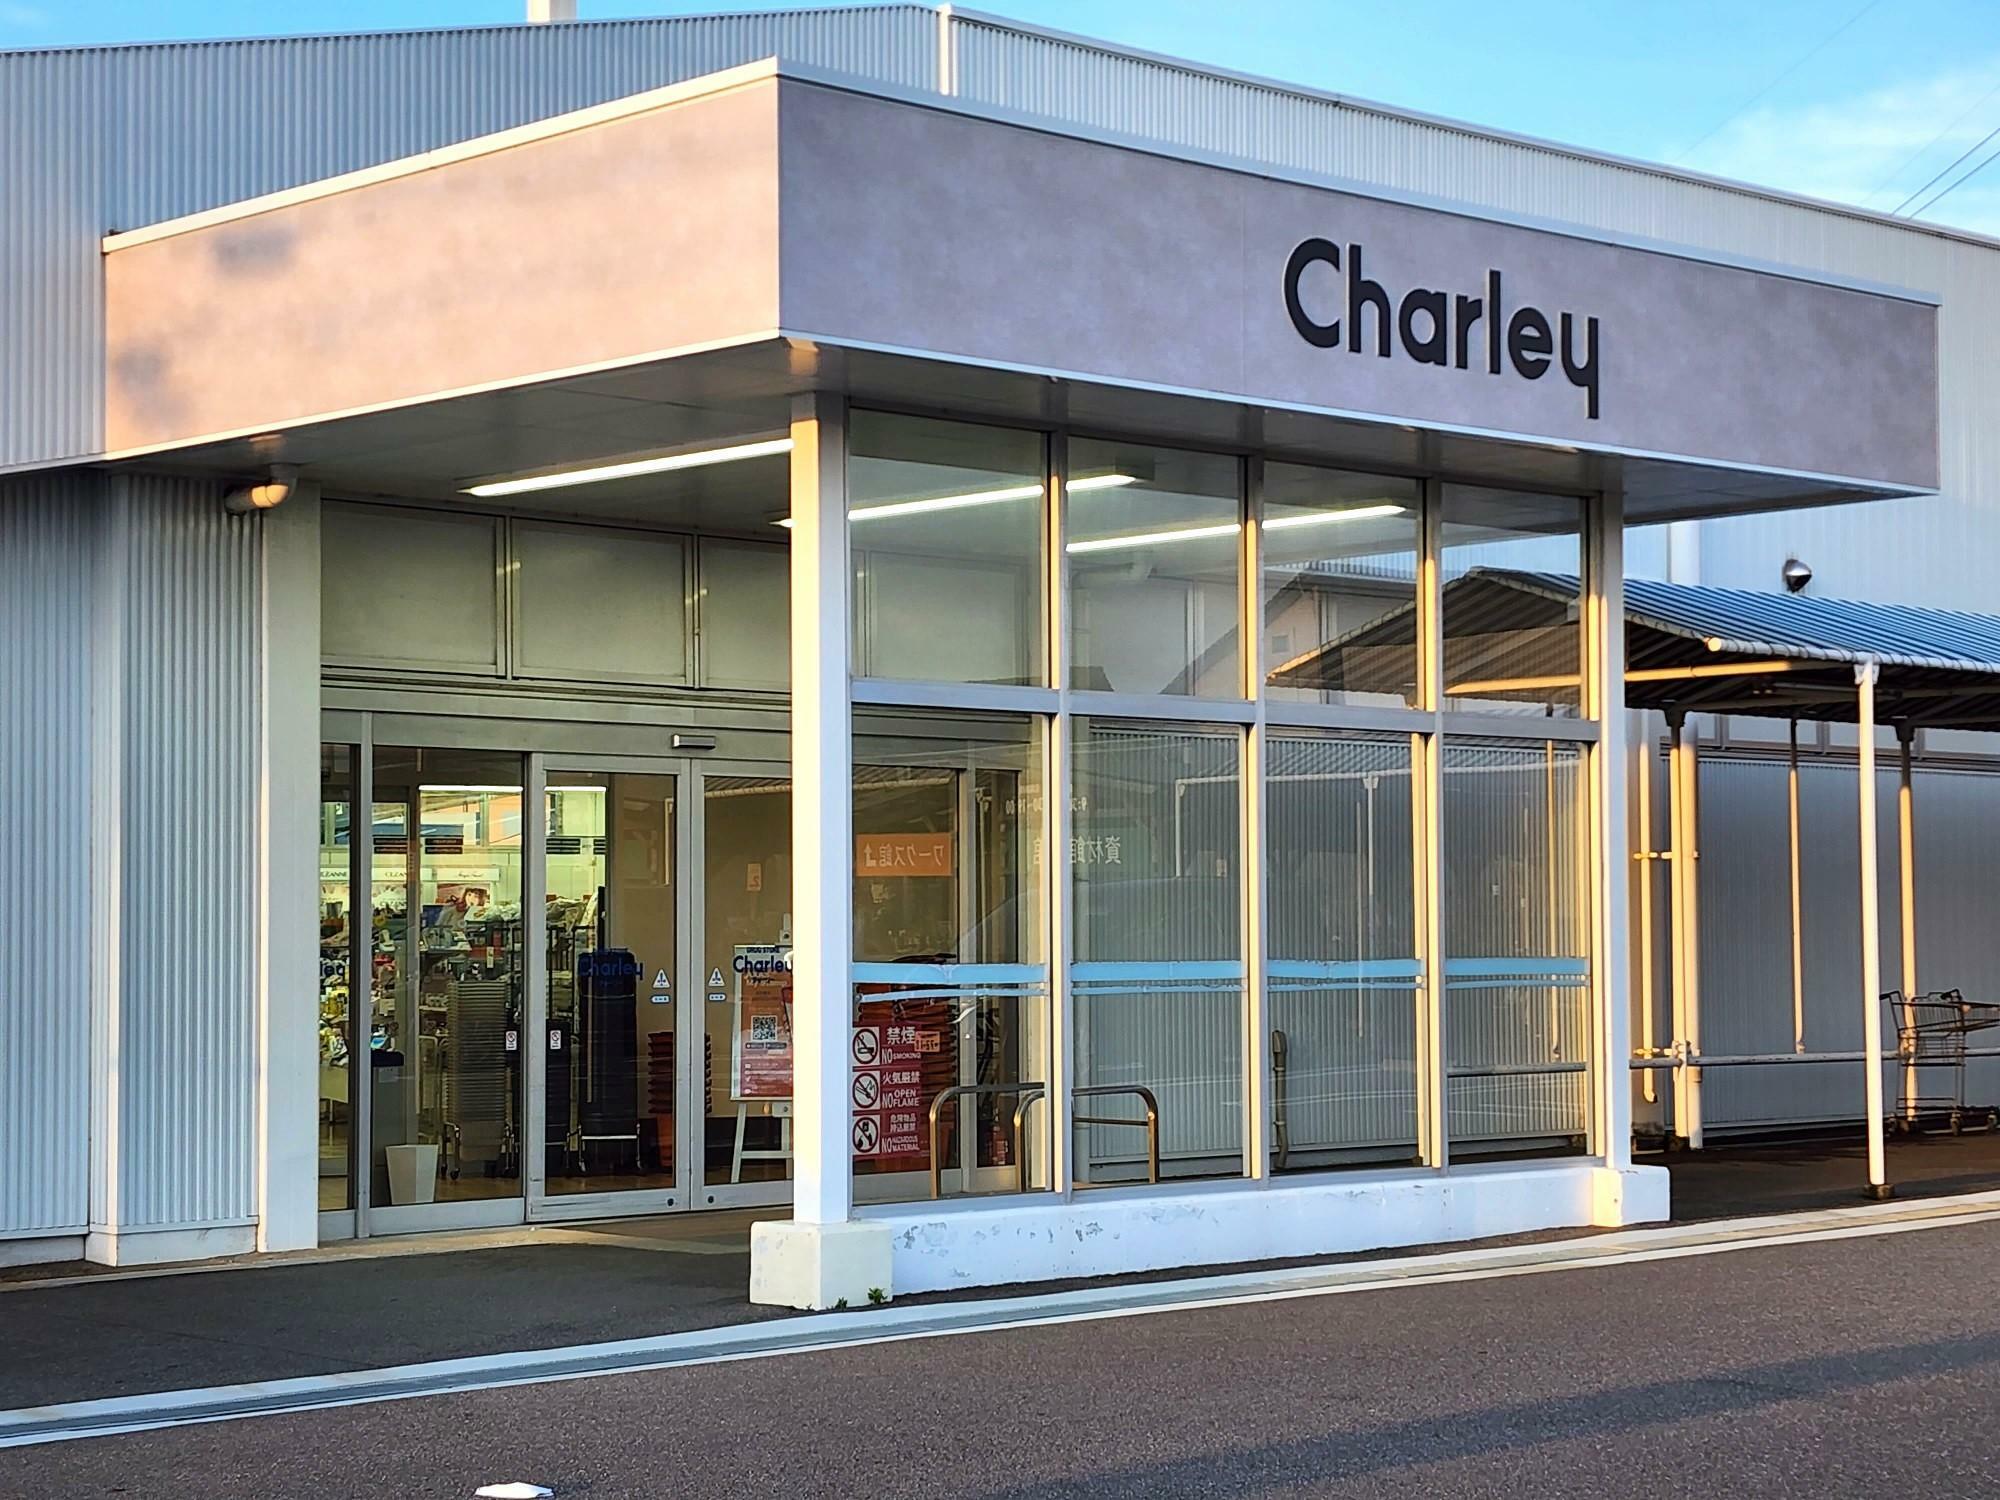 「ホームキーパーデコール 川内店」の敷地内にあり、同じ「アクサス株式会社」が運営する「チャーリー」。